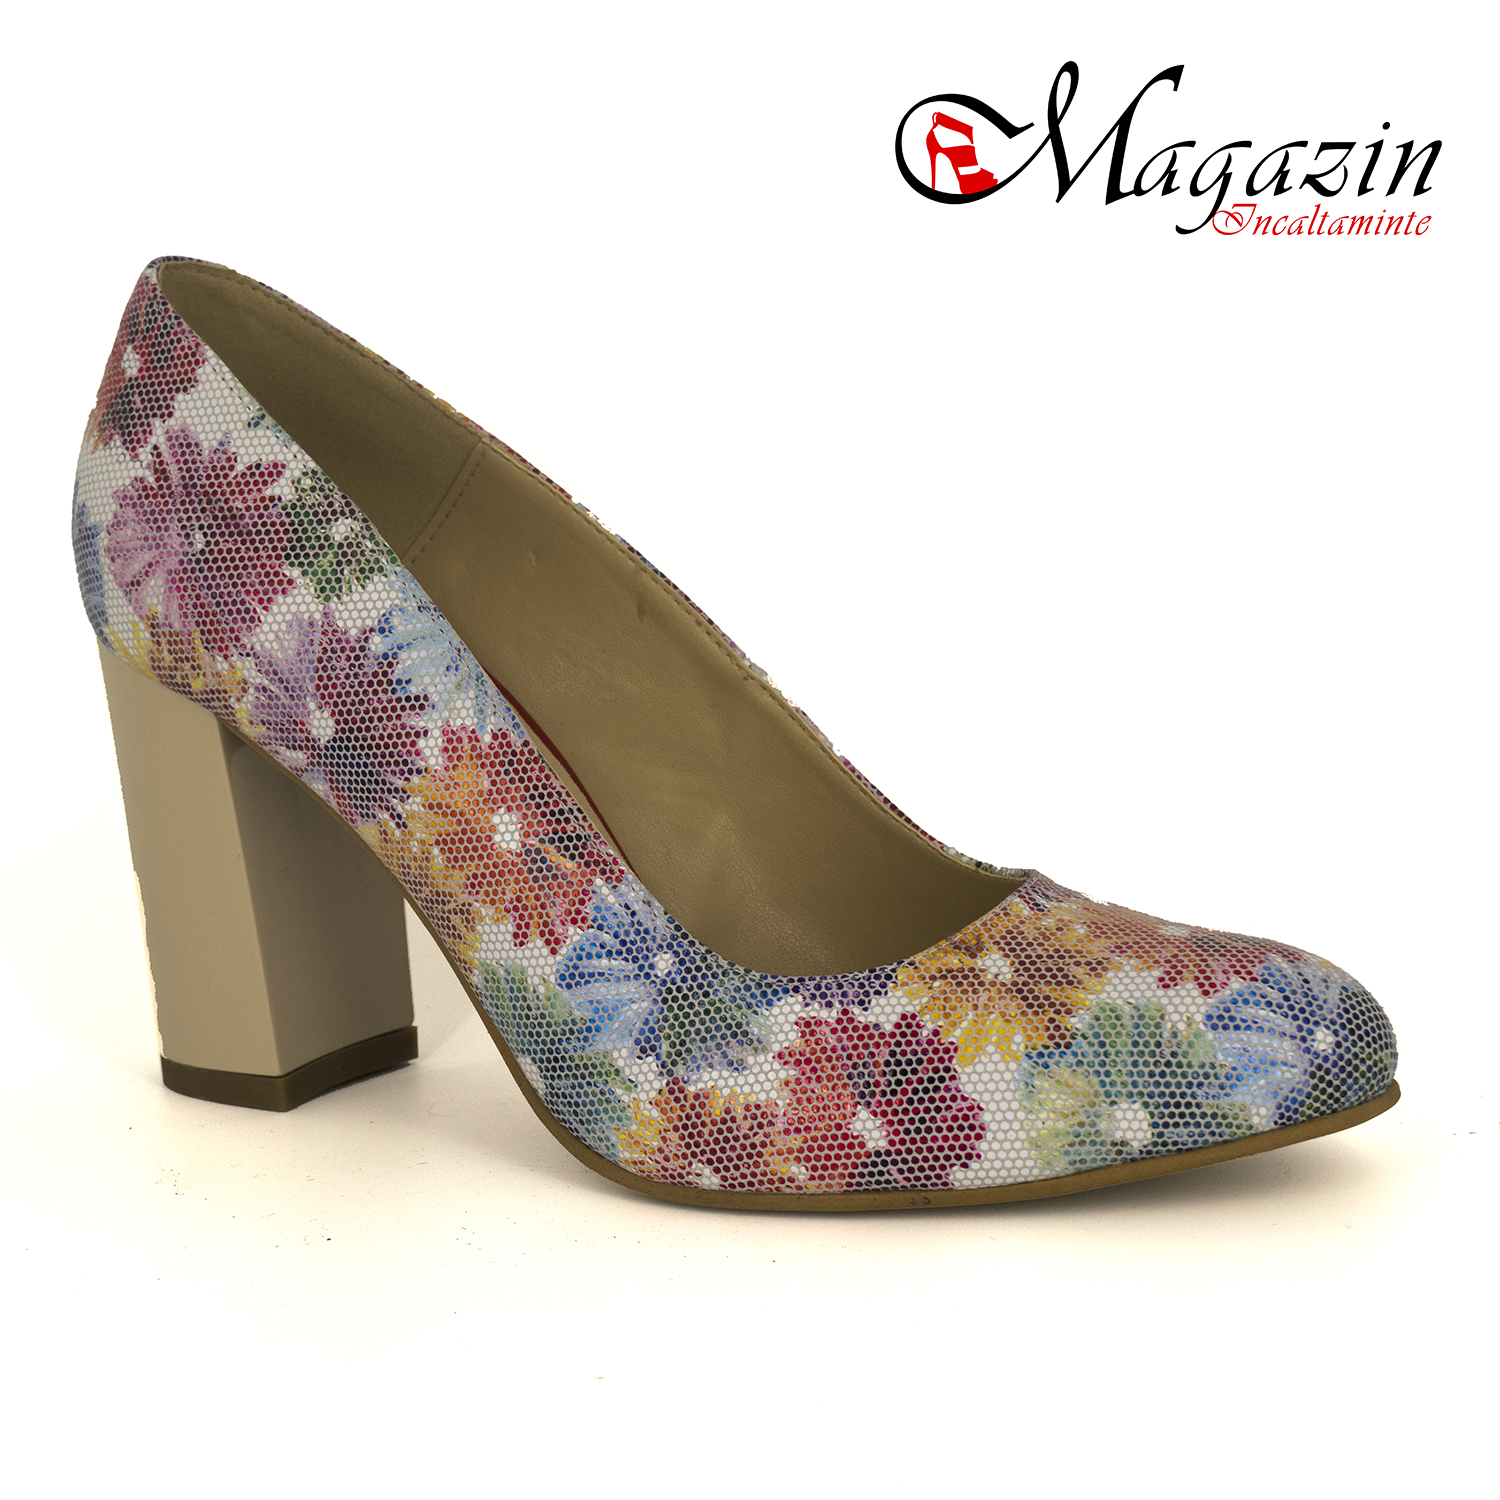 Pantofi piele imprimeu floral - Corvaris 410x Floral2